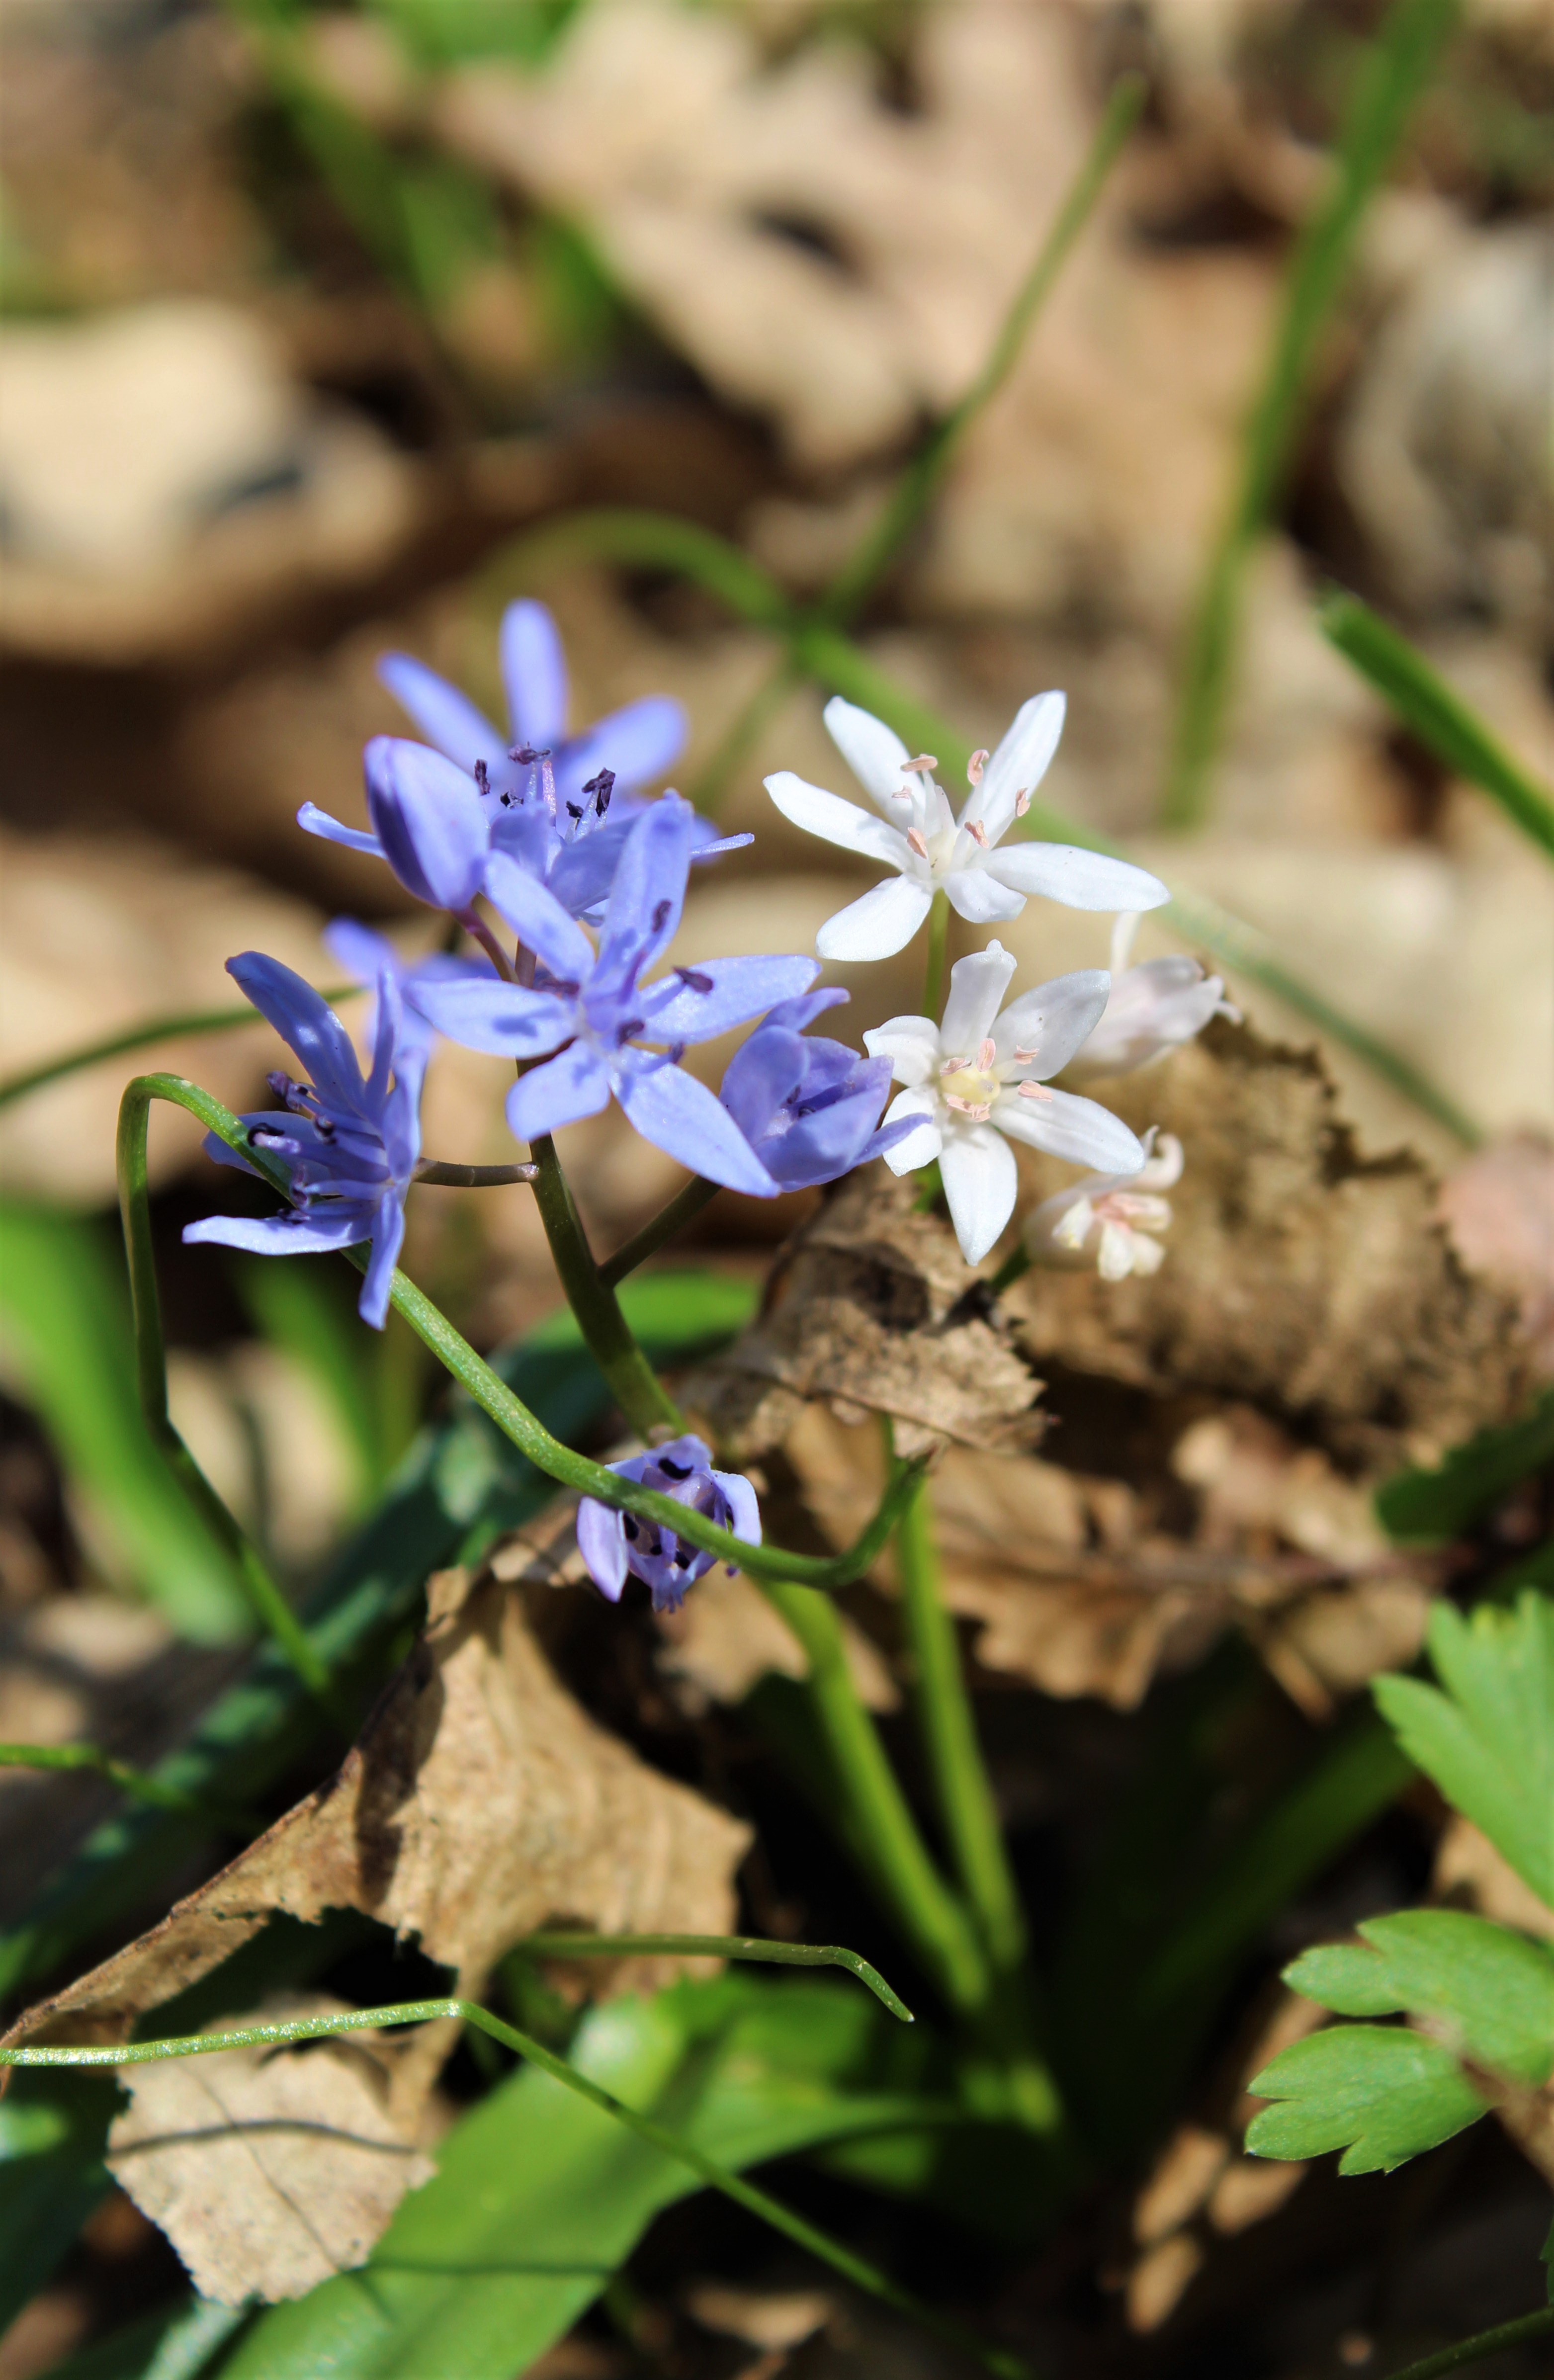 erdélyi csillagvirág lila és fehér változatai